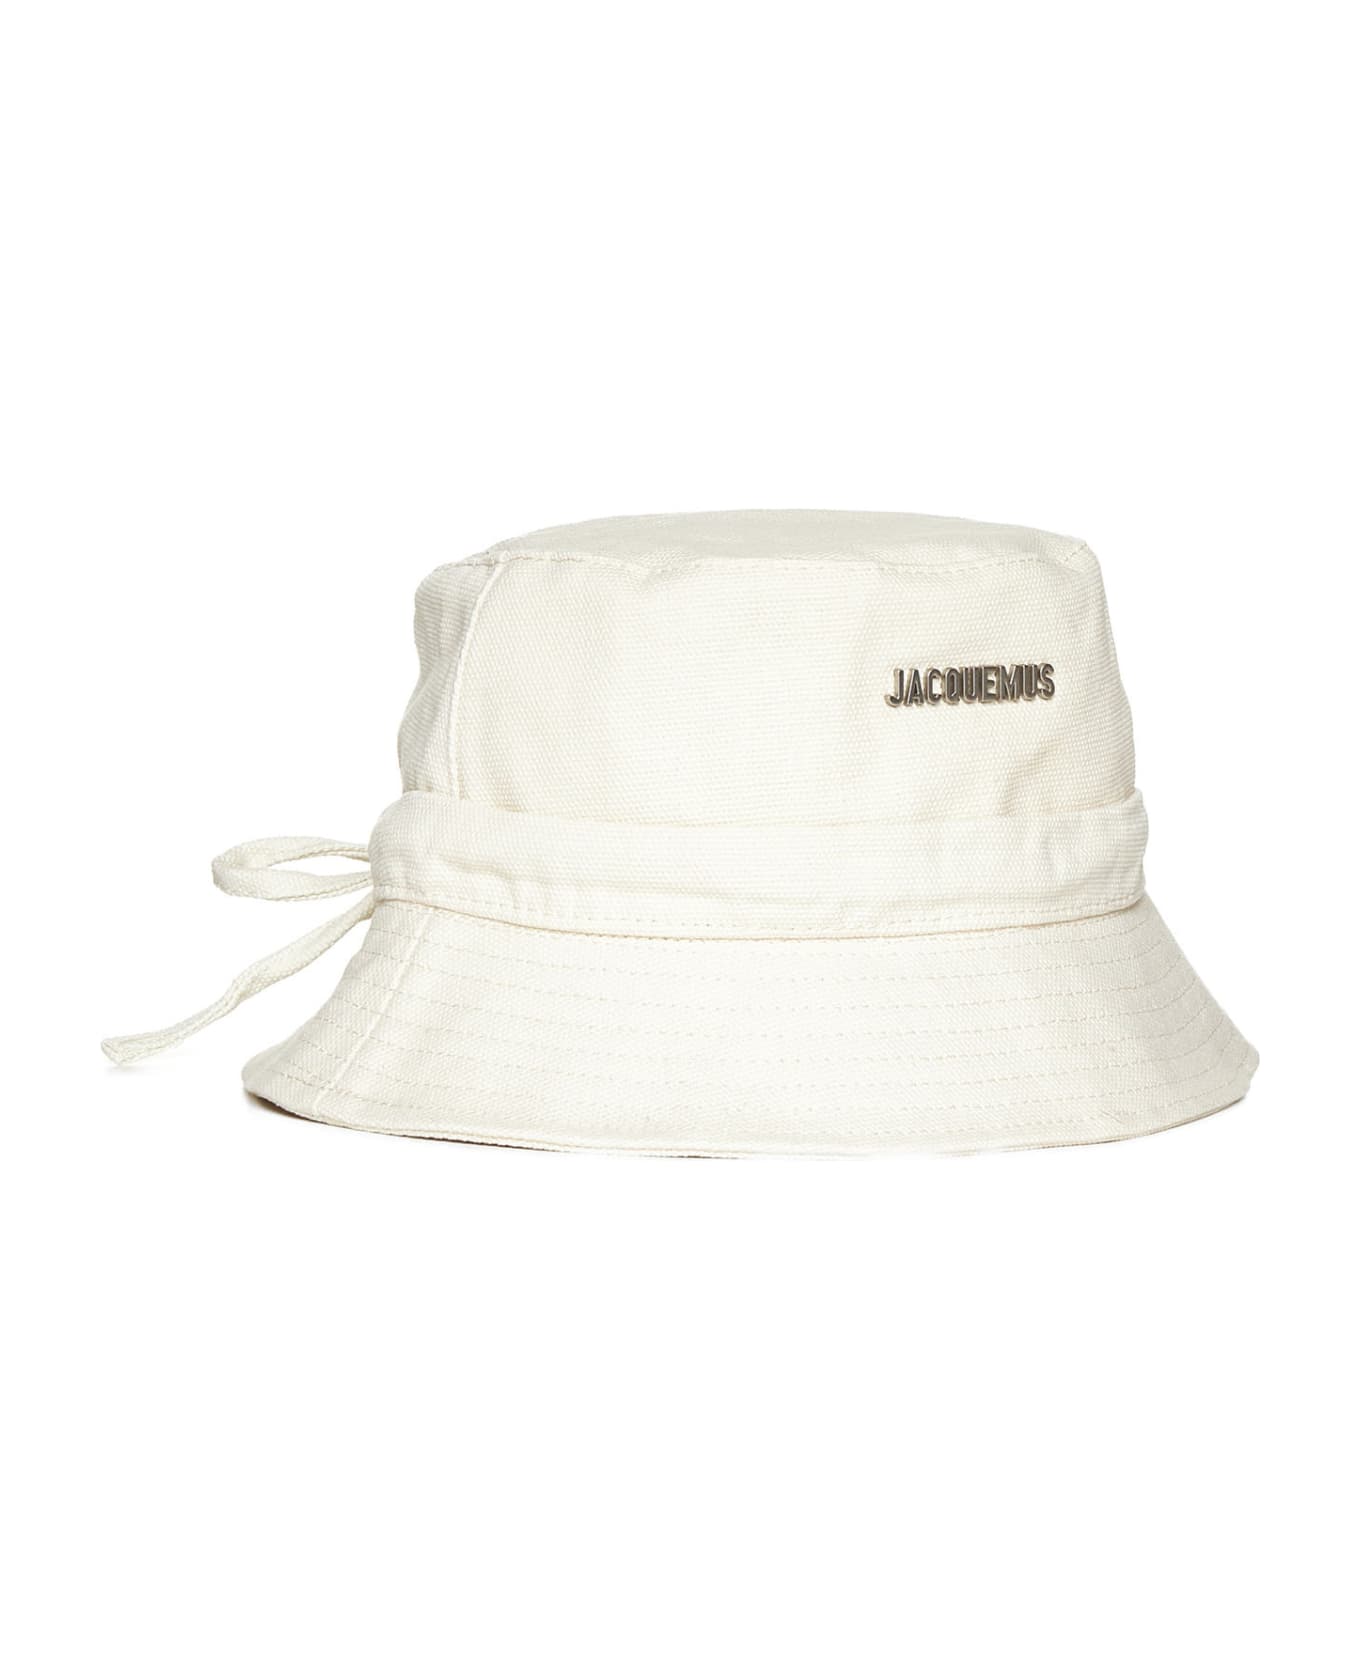 Jacquemus Hat - Off-white